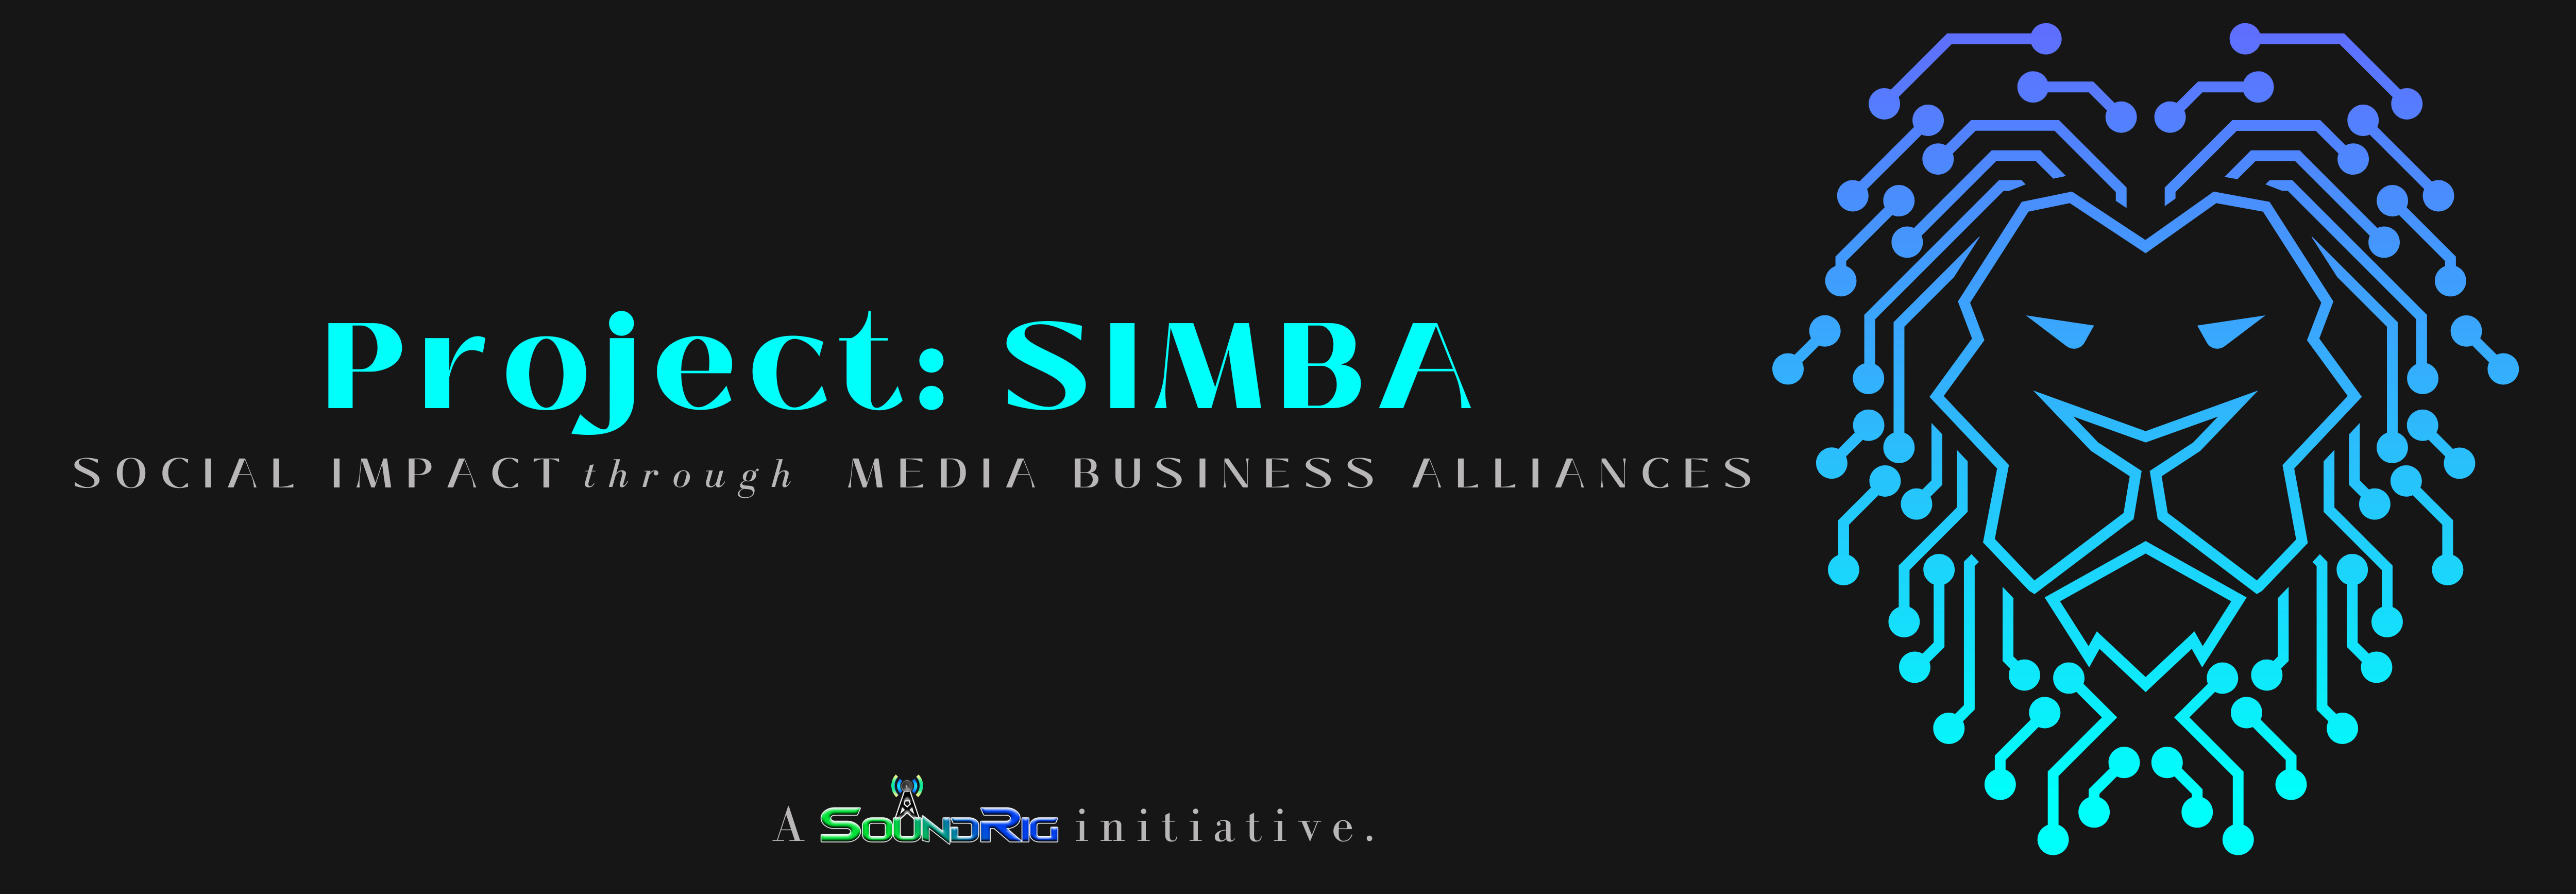 Project: SIMBA